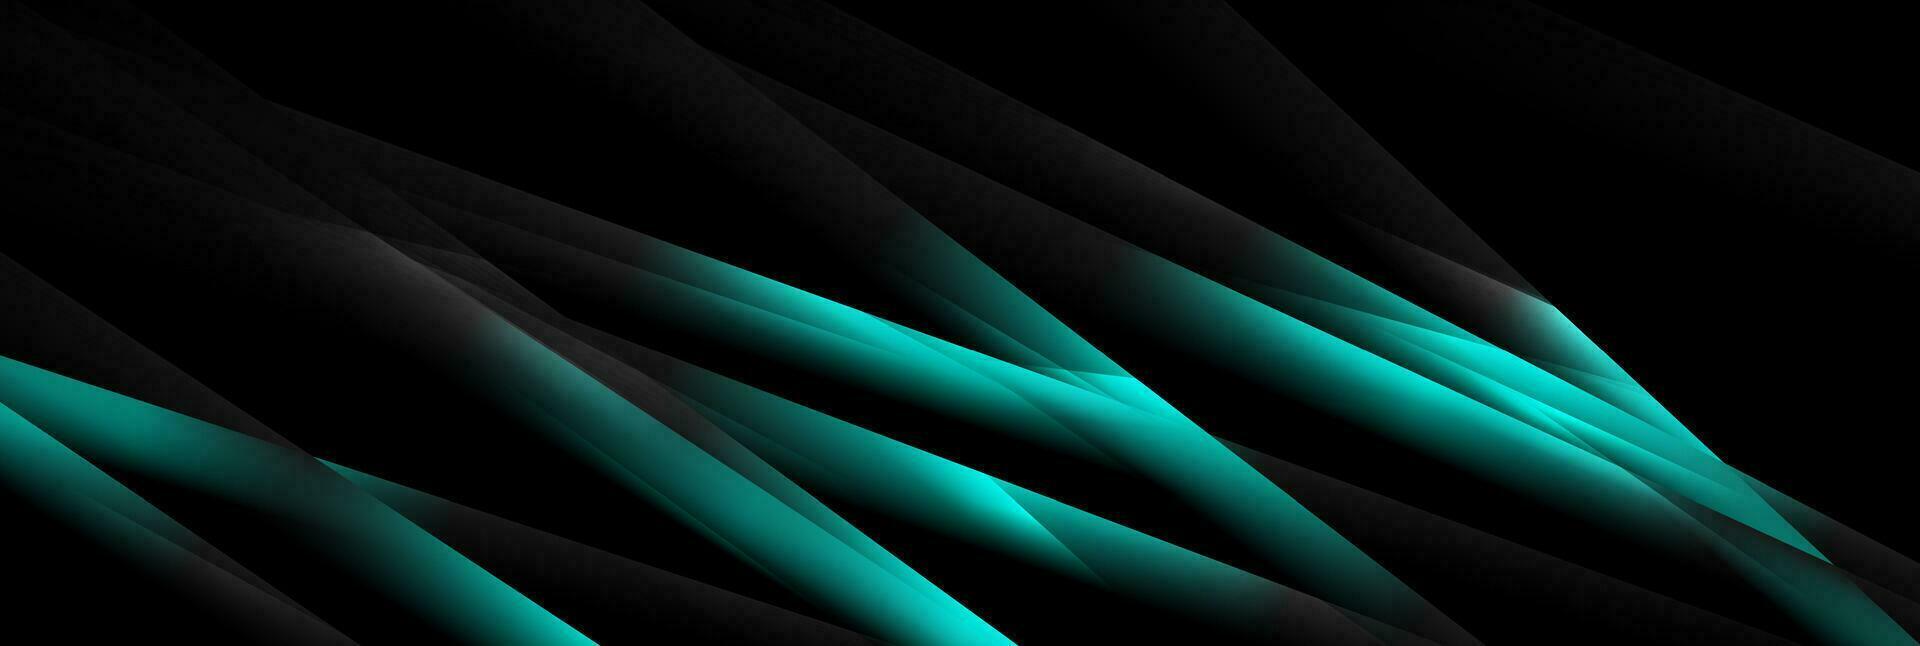 ljus blå cyan abstrakt glansig Ränder på svart bakgrund vektor